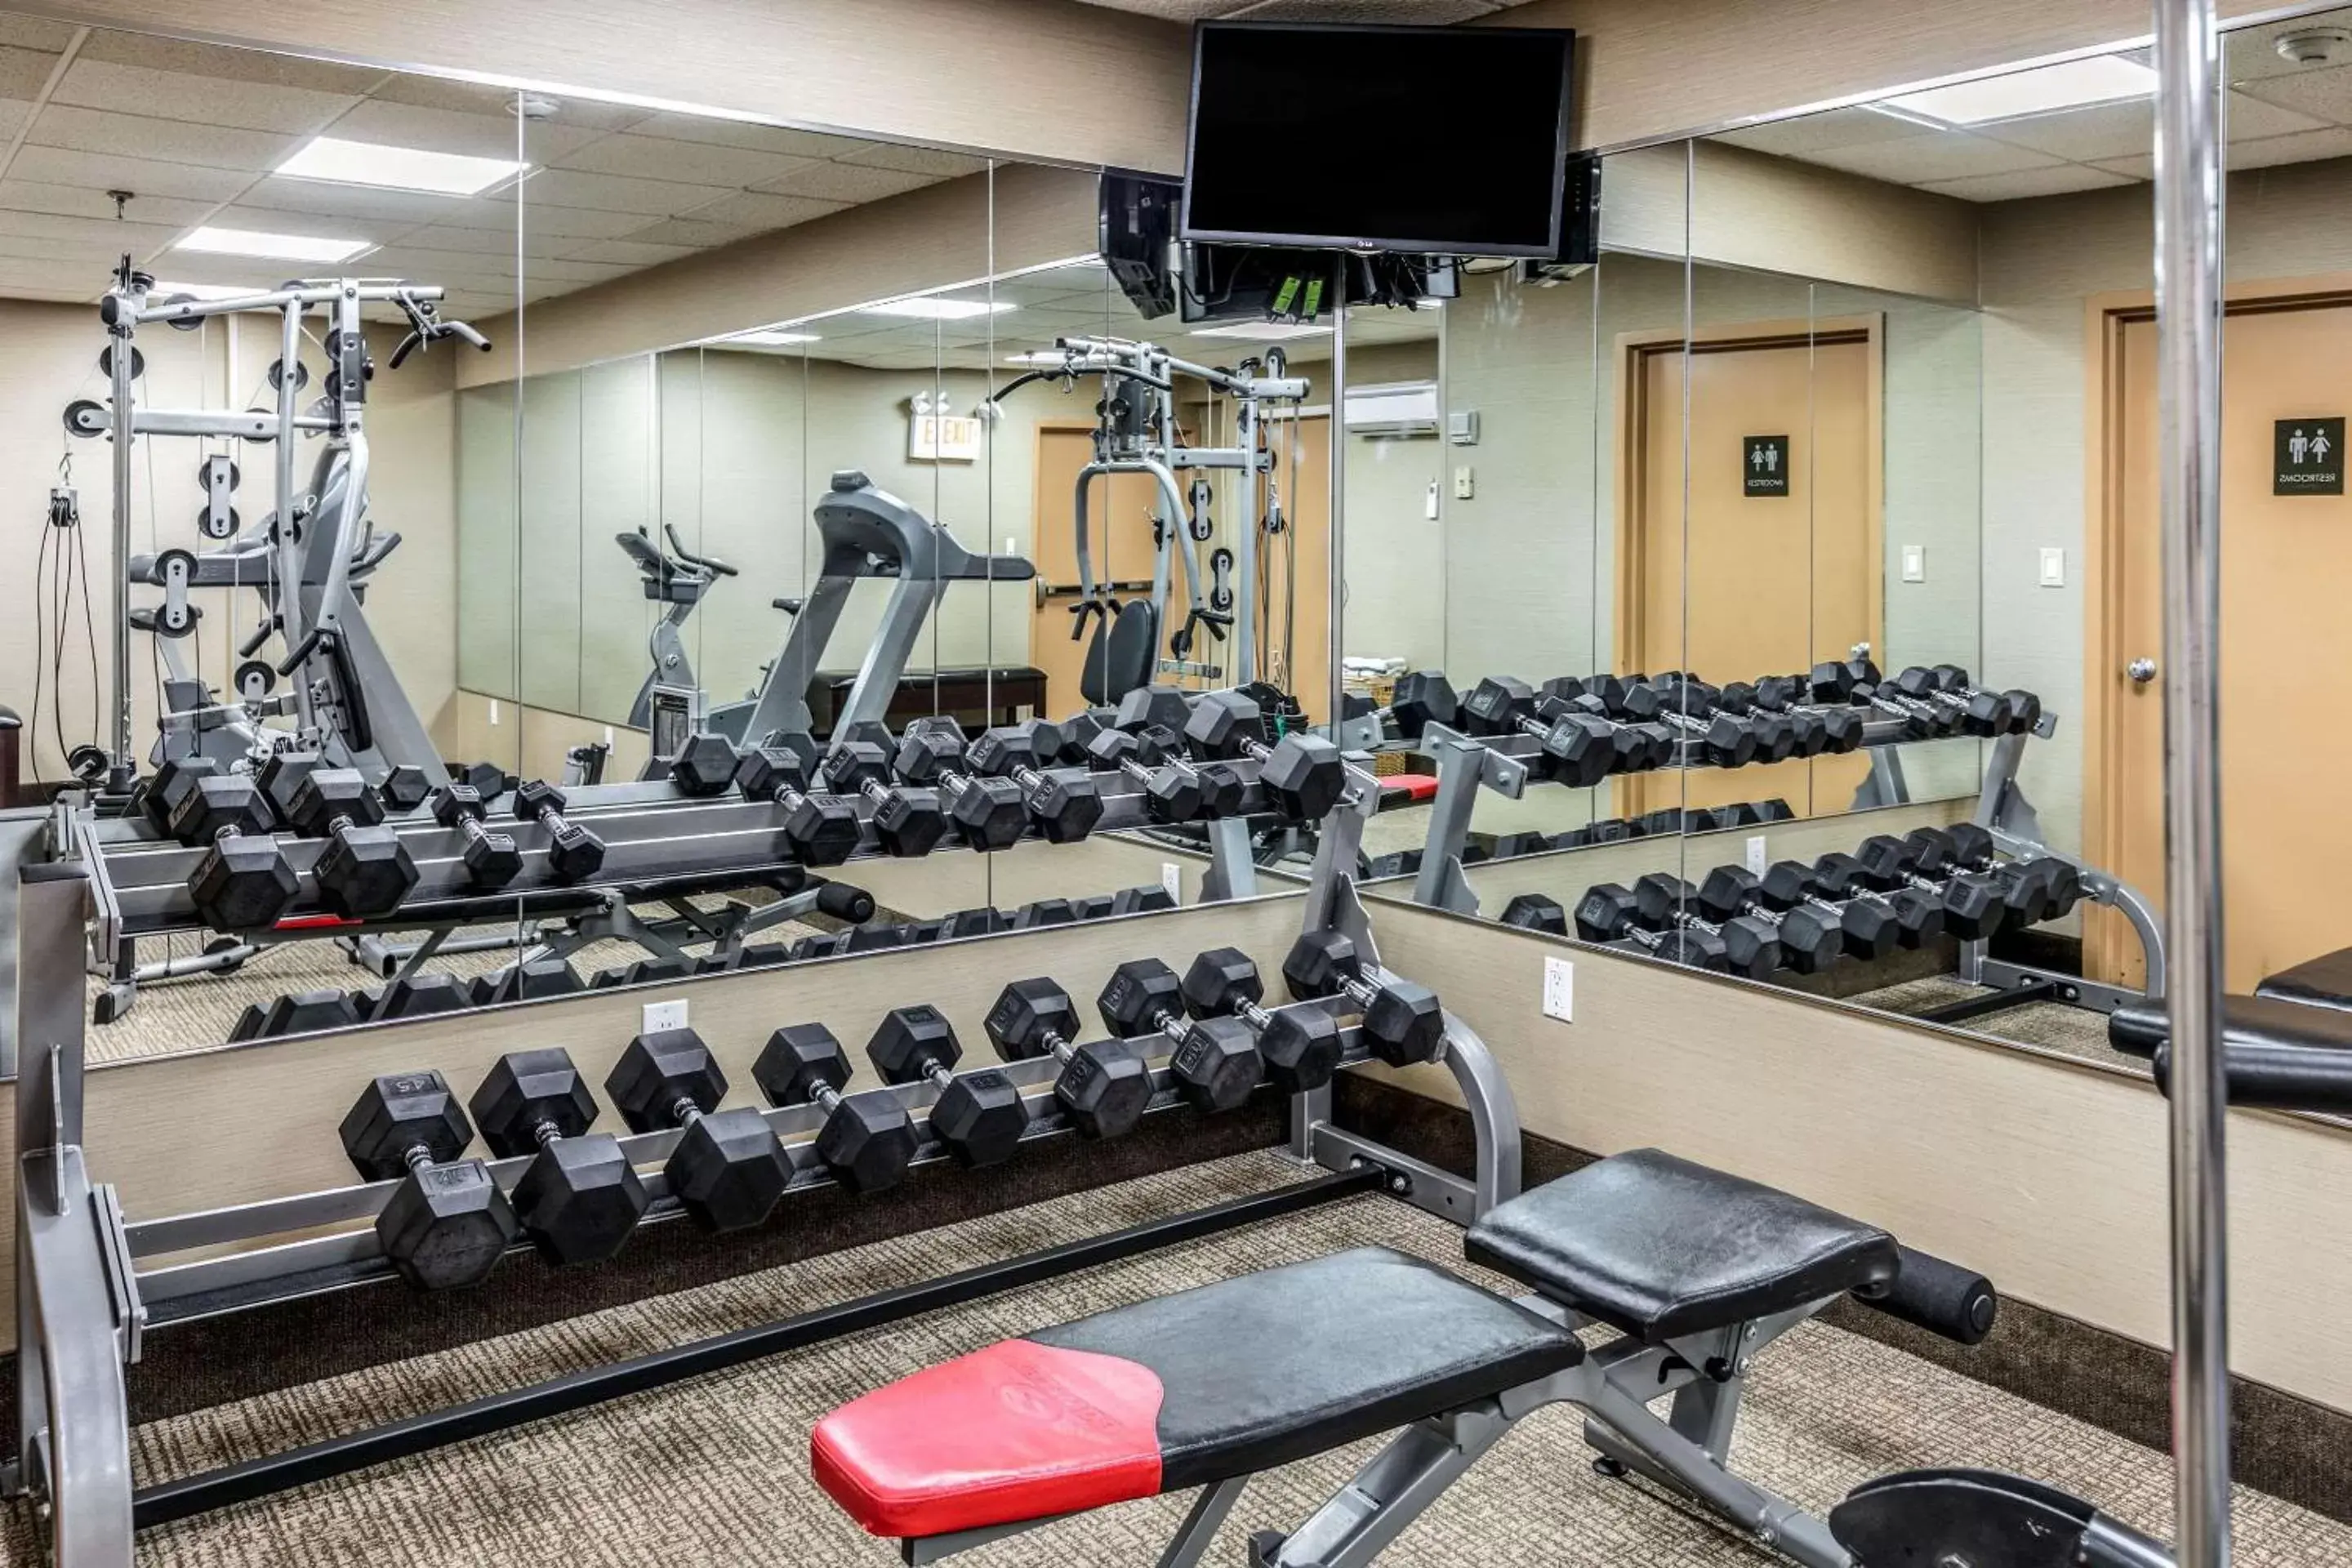 Fitness centre/facilities, Fitness Center/Facilities in Comfort Inn Medford-Long Island